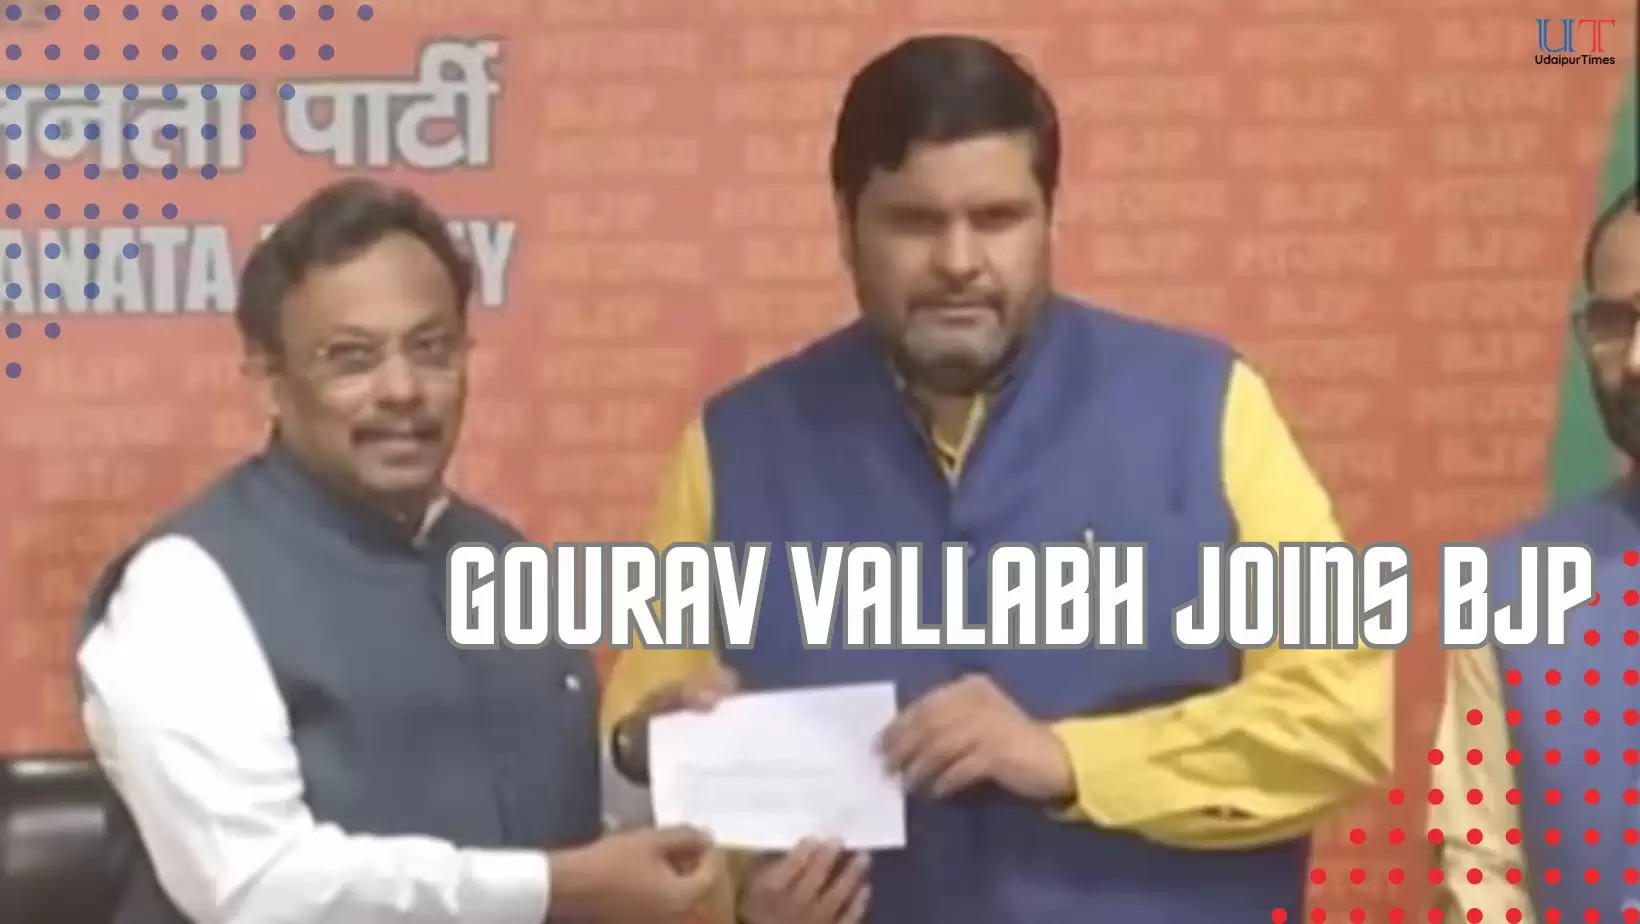 Gourav Vallabh Joins BJP